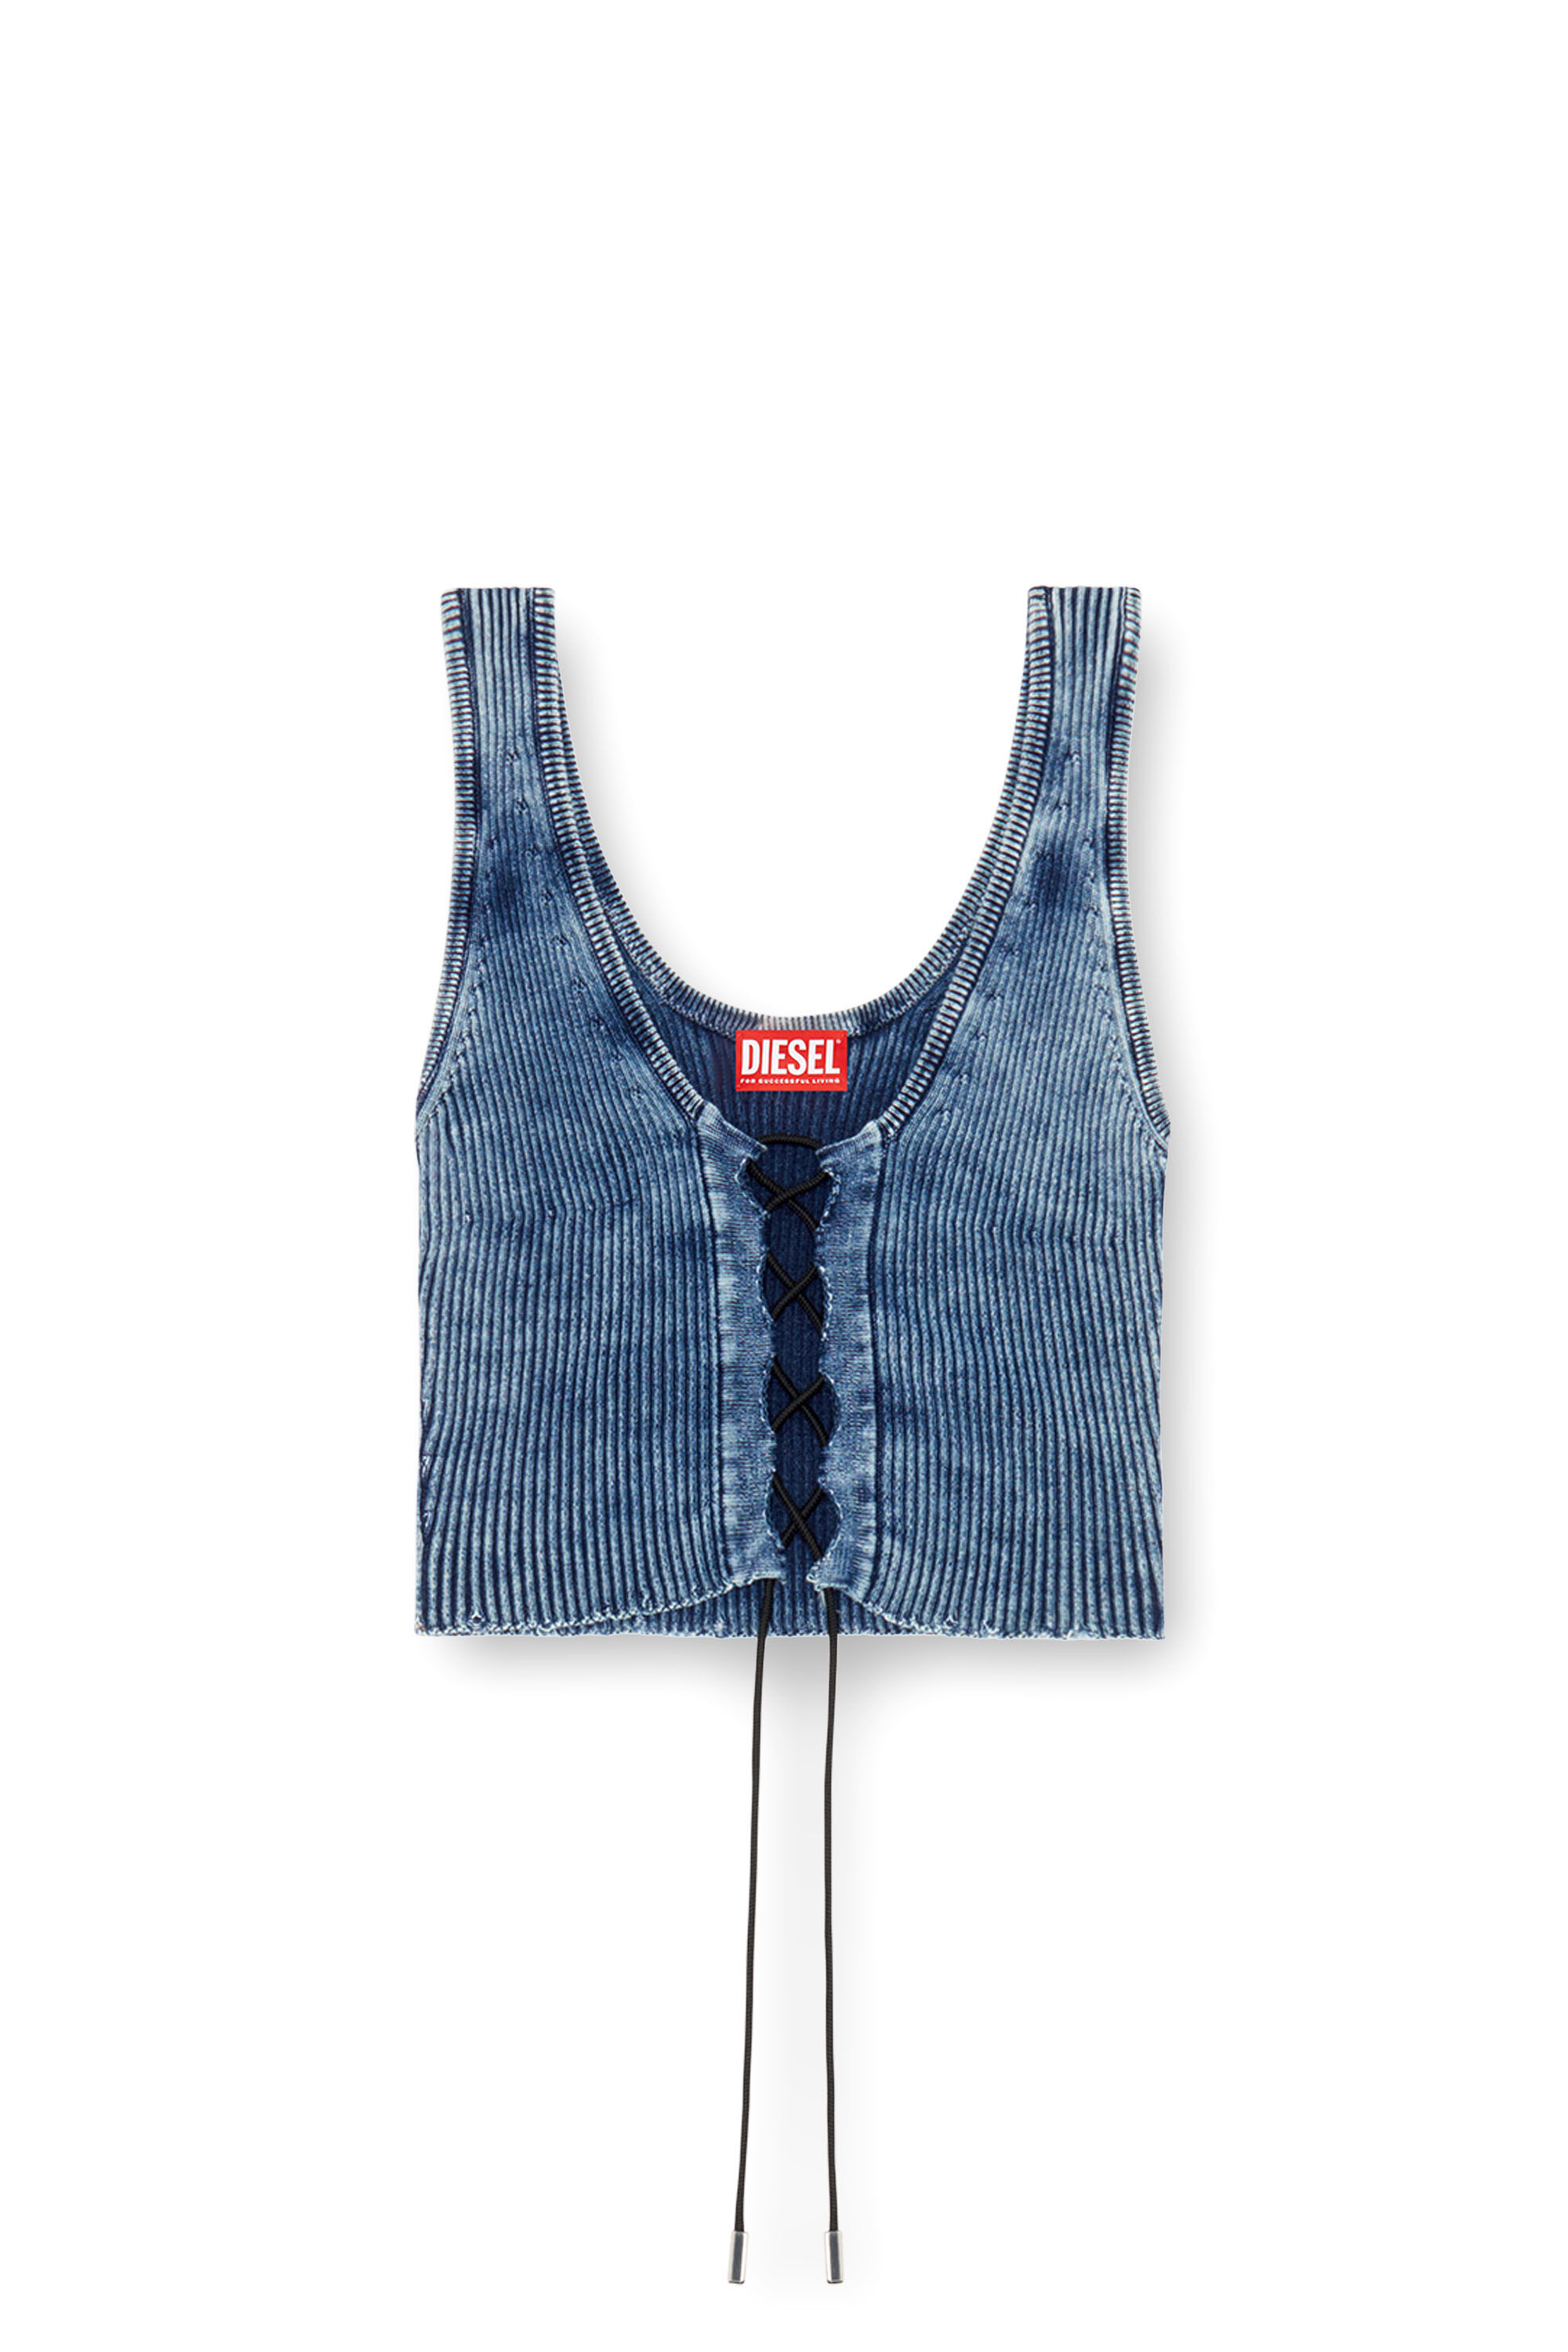 Diesel - M-ADONE, Mujer Camiseta sin mangas recortada con cordones en tejido índigo in Azul marino - Image 2